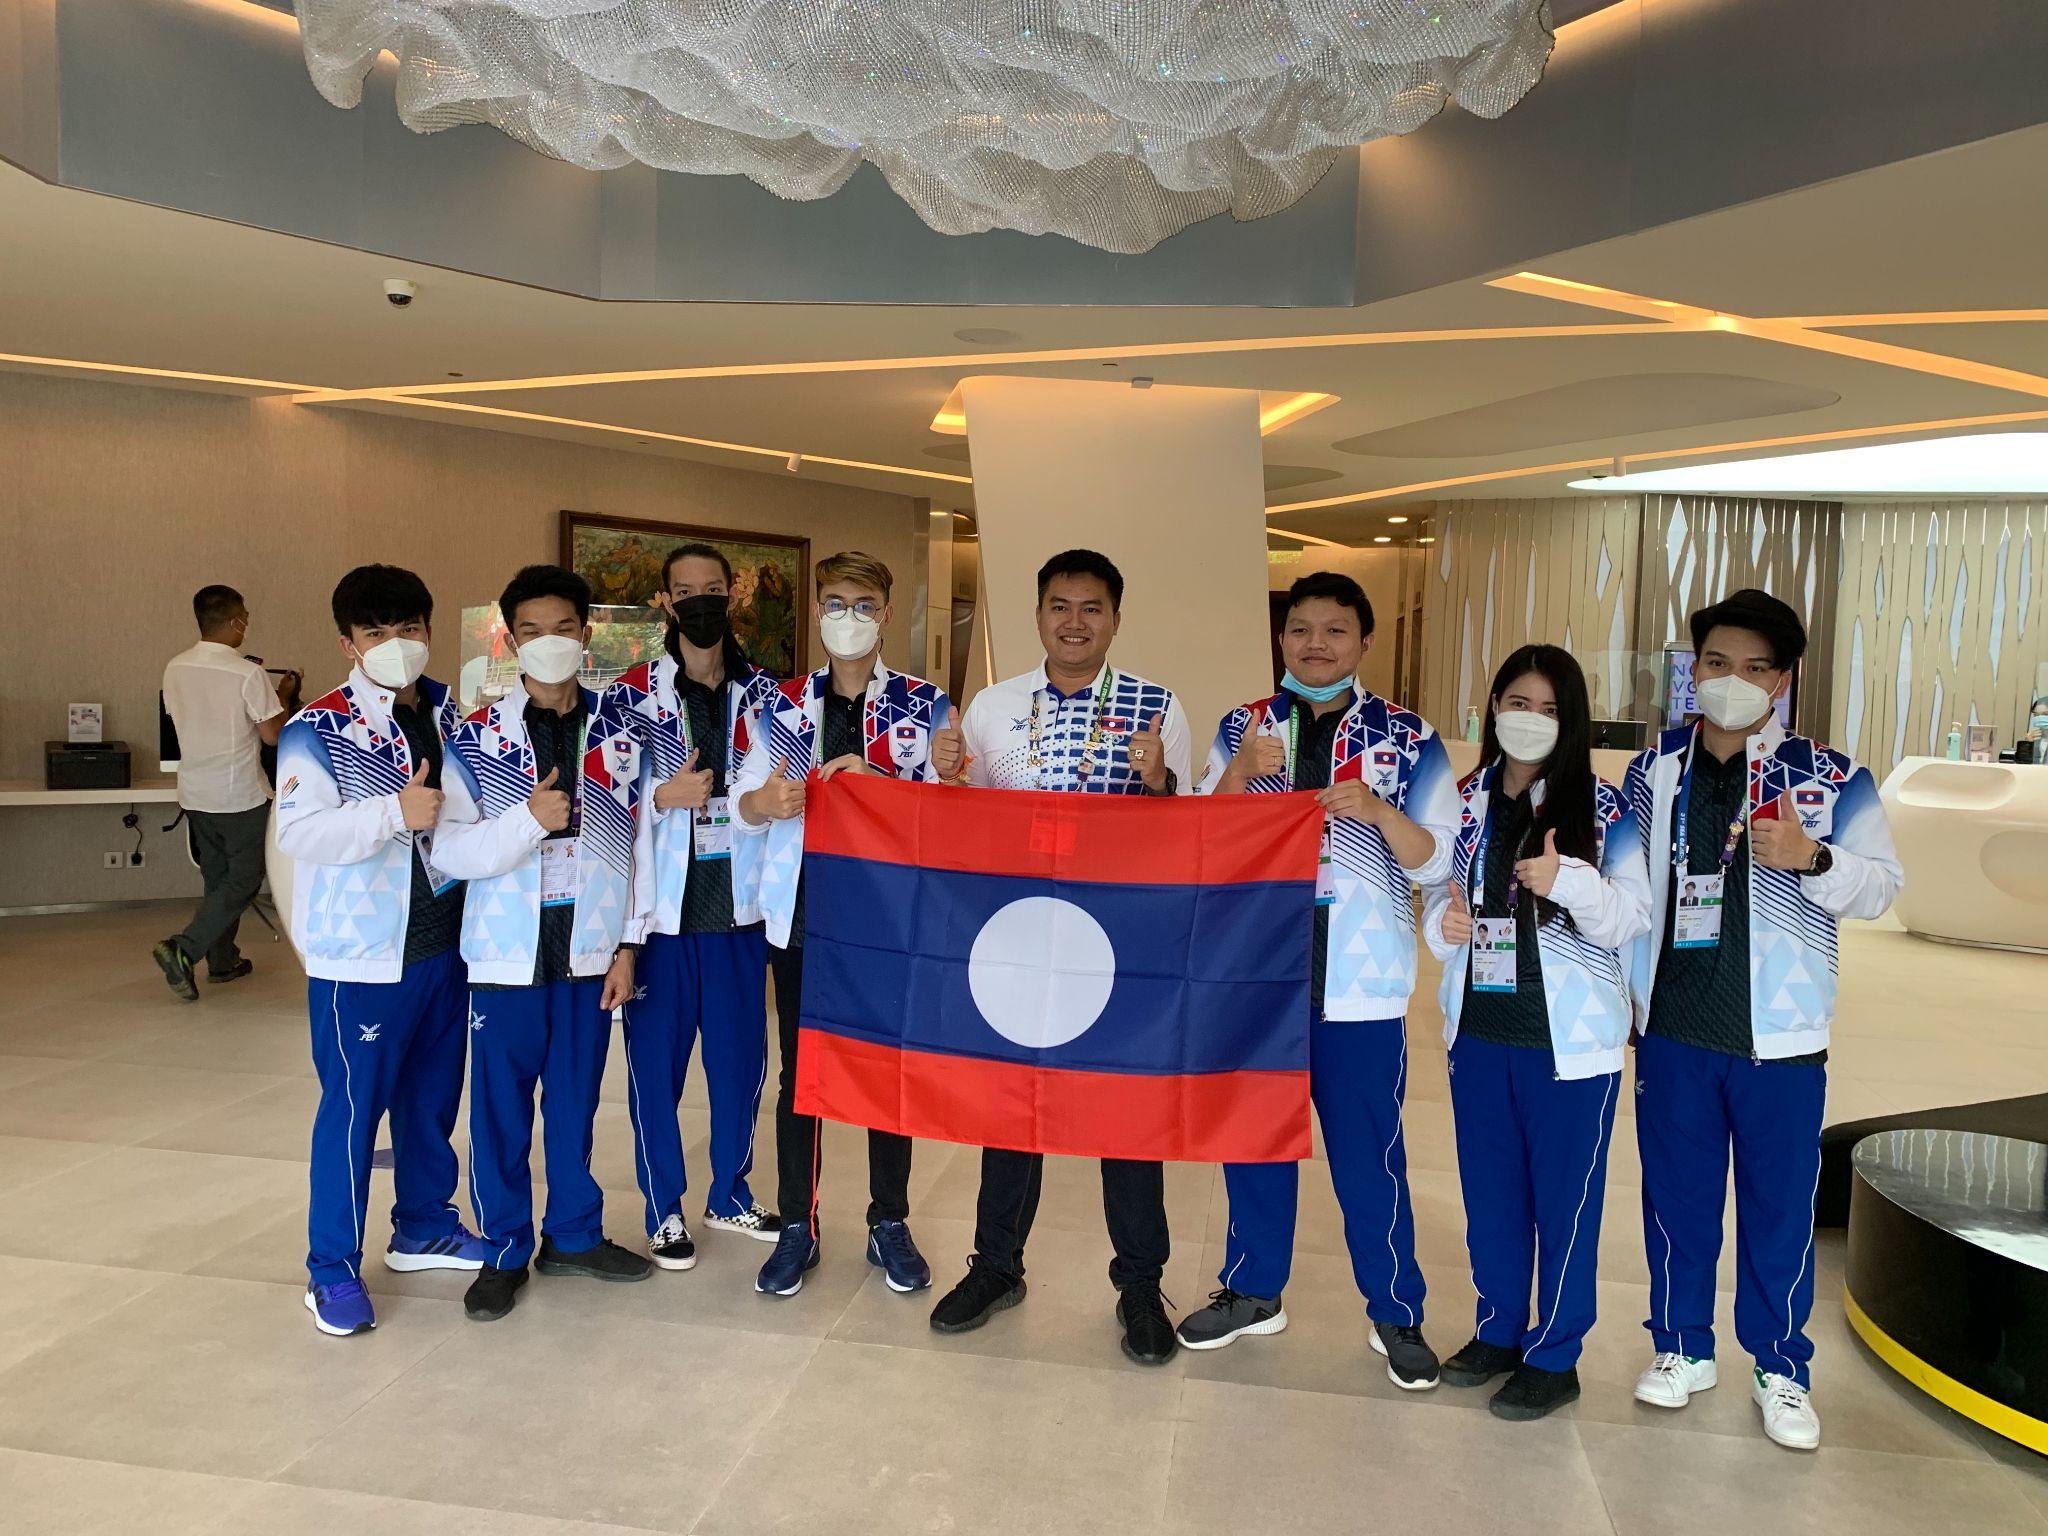 Đội tuyển Liên Minh Huyền Thoại Việt Nam đã có mặt tại Hà Nội, được dự đoán Huy chương Vàng cầm chắc trong tay